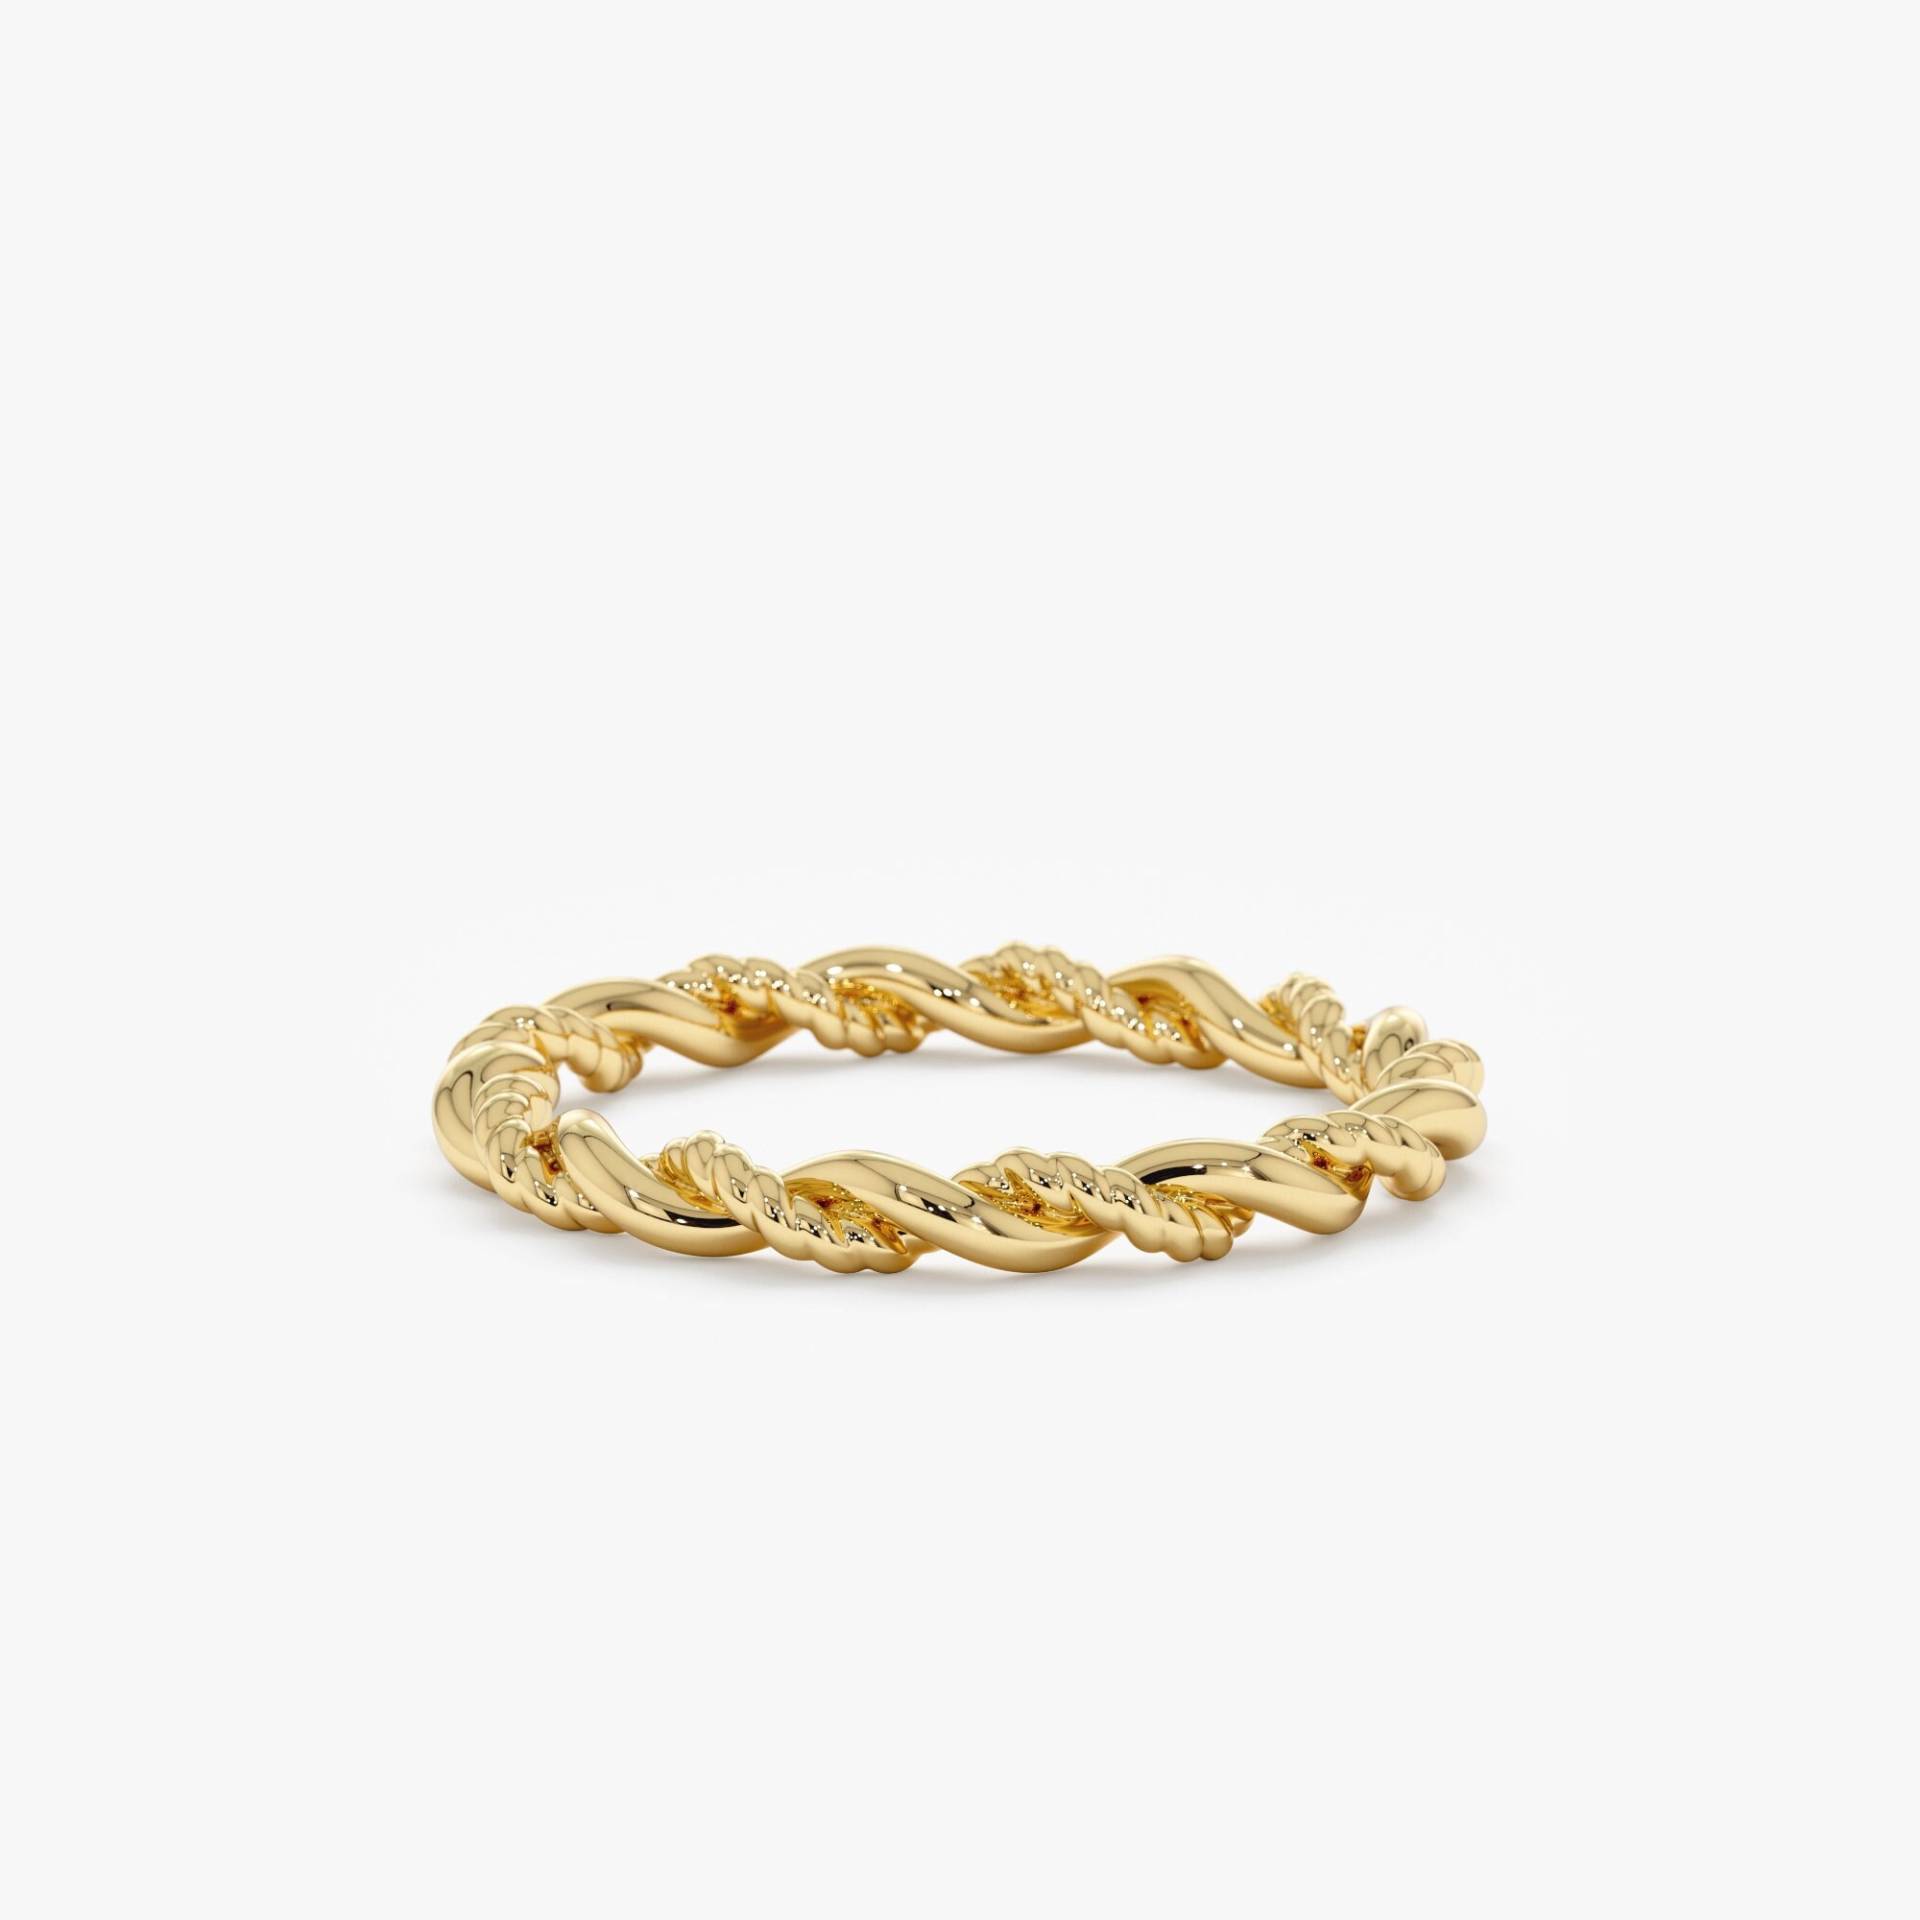 Massiver Gold-Twist-Ring, Handgefertigter Zierlicher Seilring, Einzigartiges Design, Stapelbares Handgefertigtes Schlichtes Band, Alltäglicher von SarahEliseJewelry